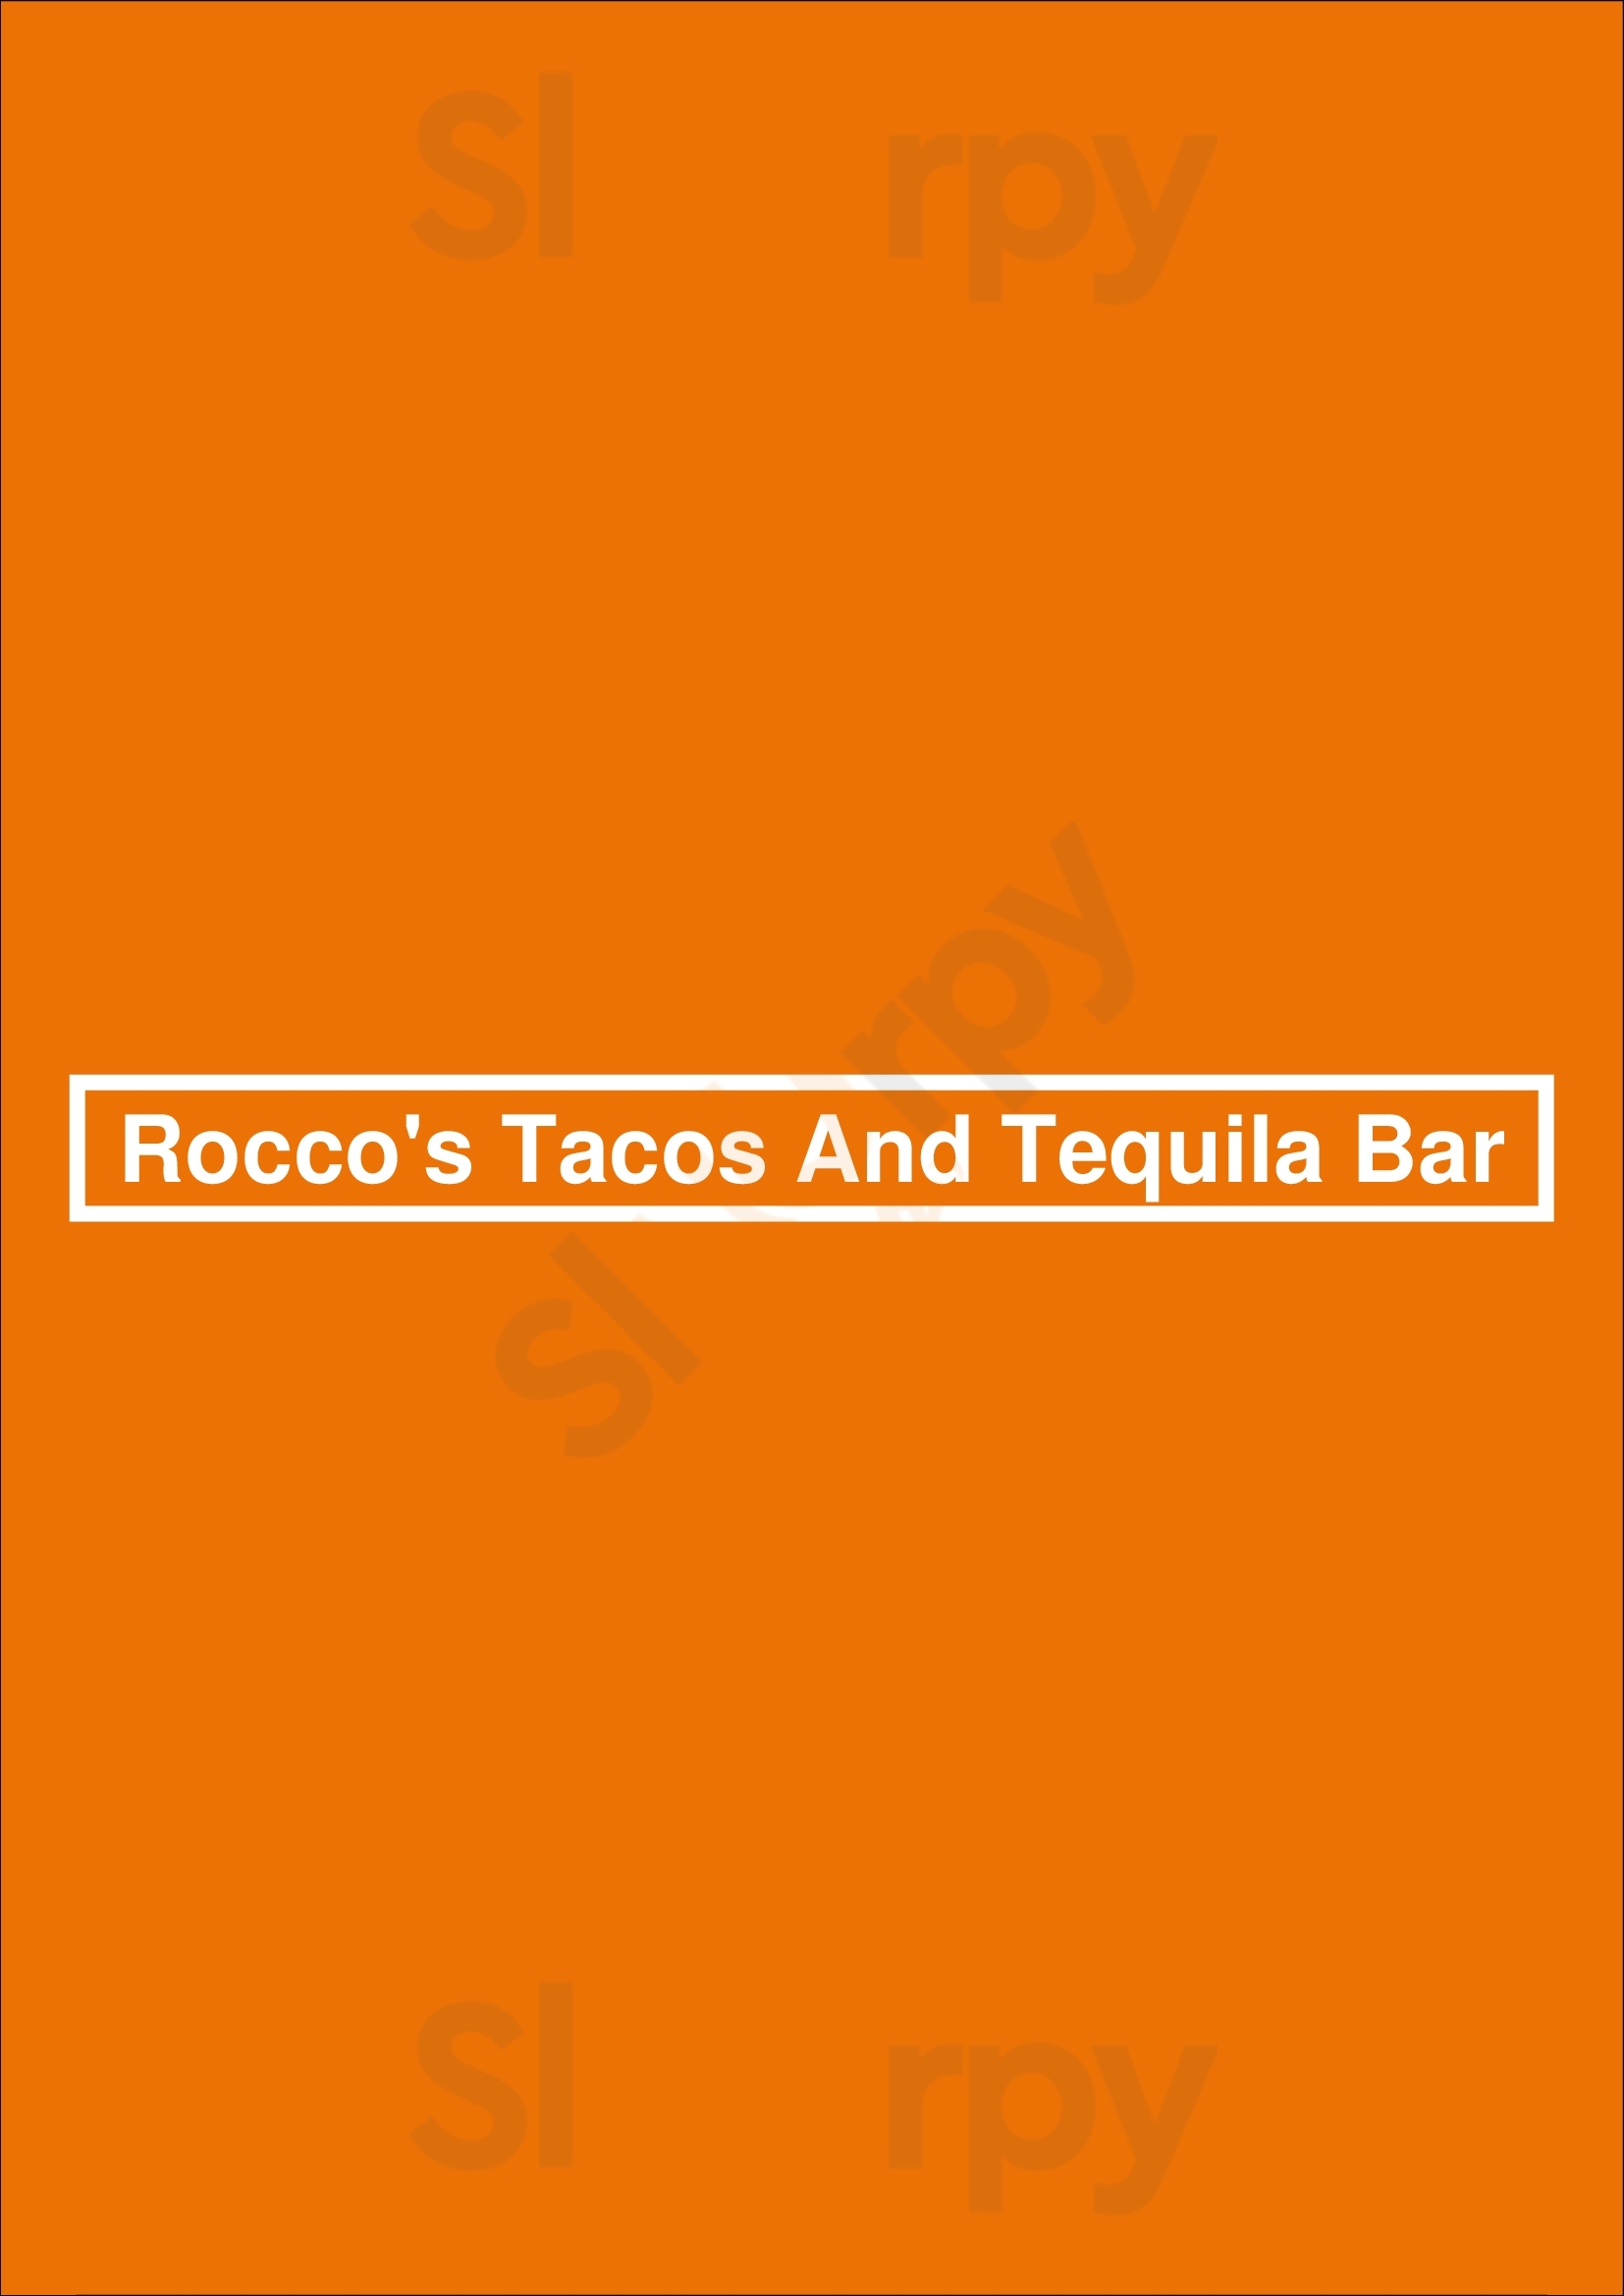 Rocco's Tacos & Tequila Bar Naples Menu - 1